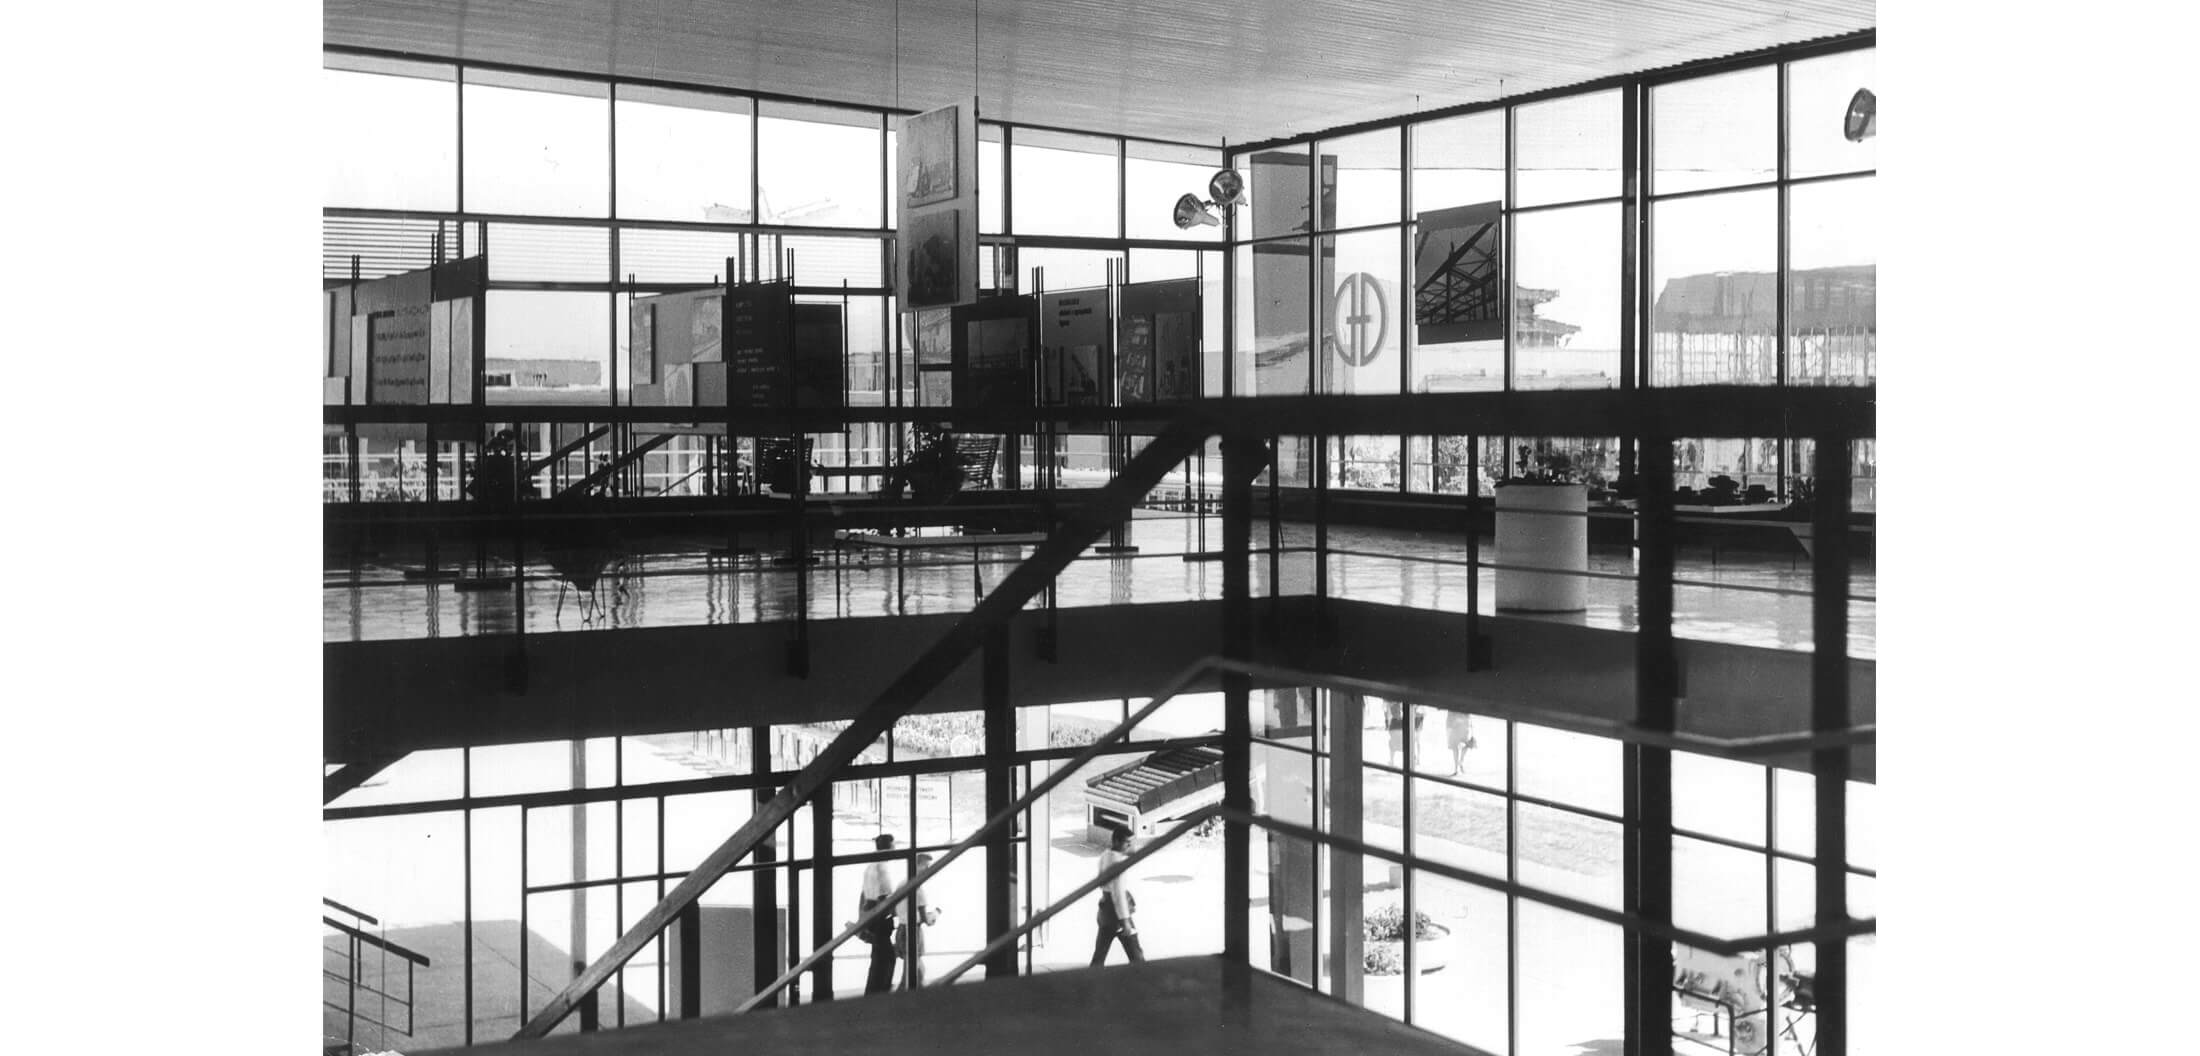 Interijer izložbenog paviljona tvornice Đuro Đaković na Zagrebačkom velesajmu; galerija, 1961. (foto: Vilko Zuber)